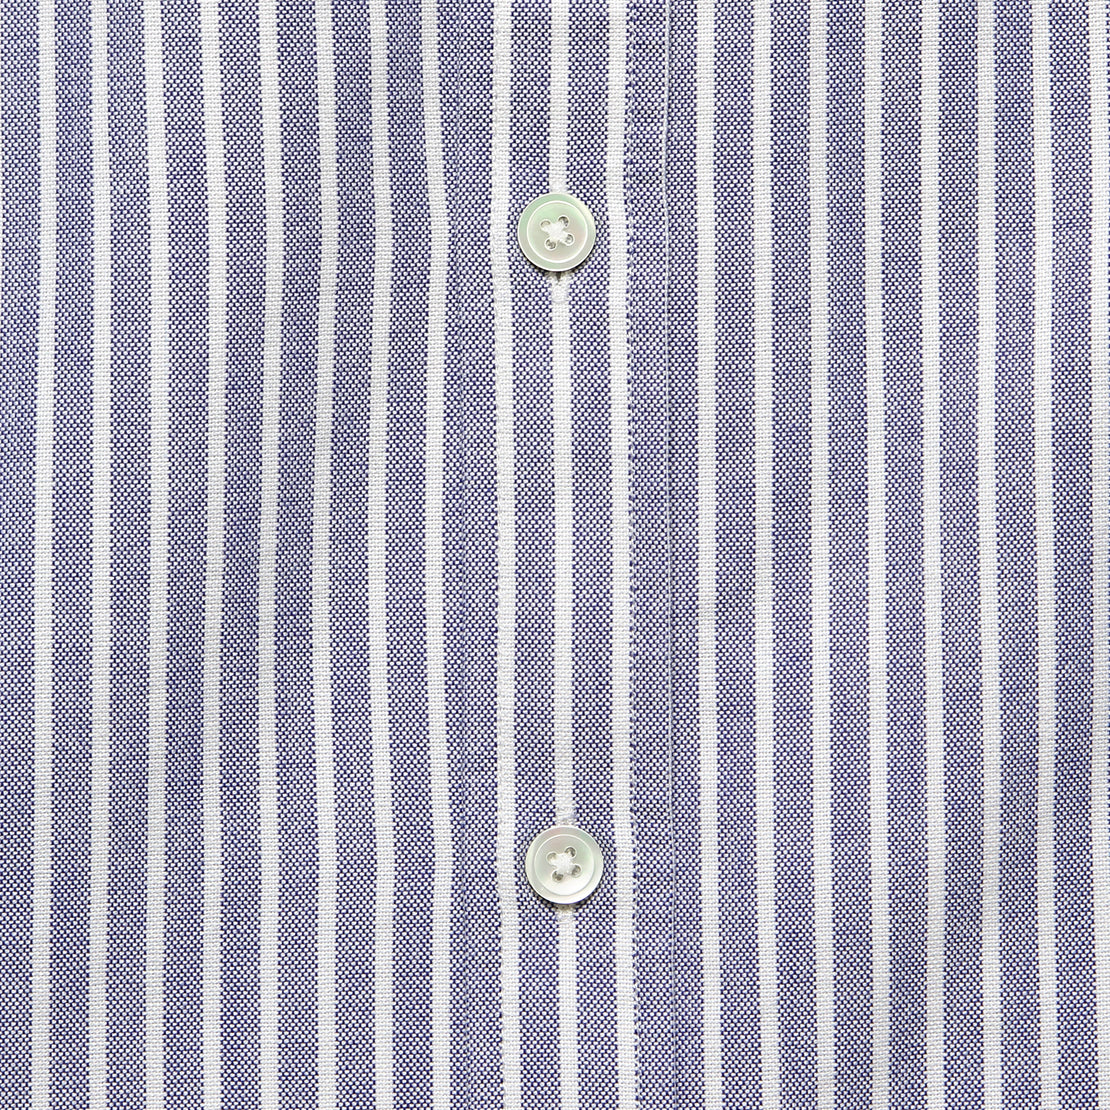 Belavista Oxford Shirt - Blue Stripe - Portuguese Flannel - STAG Provisions - Tops - L/S Woven - Stripe